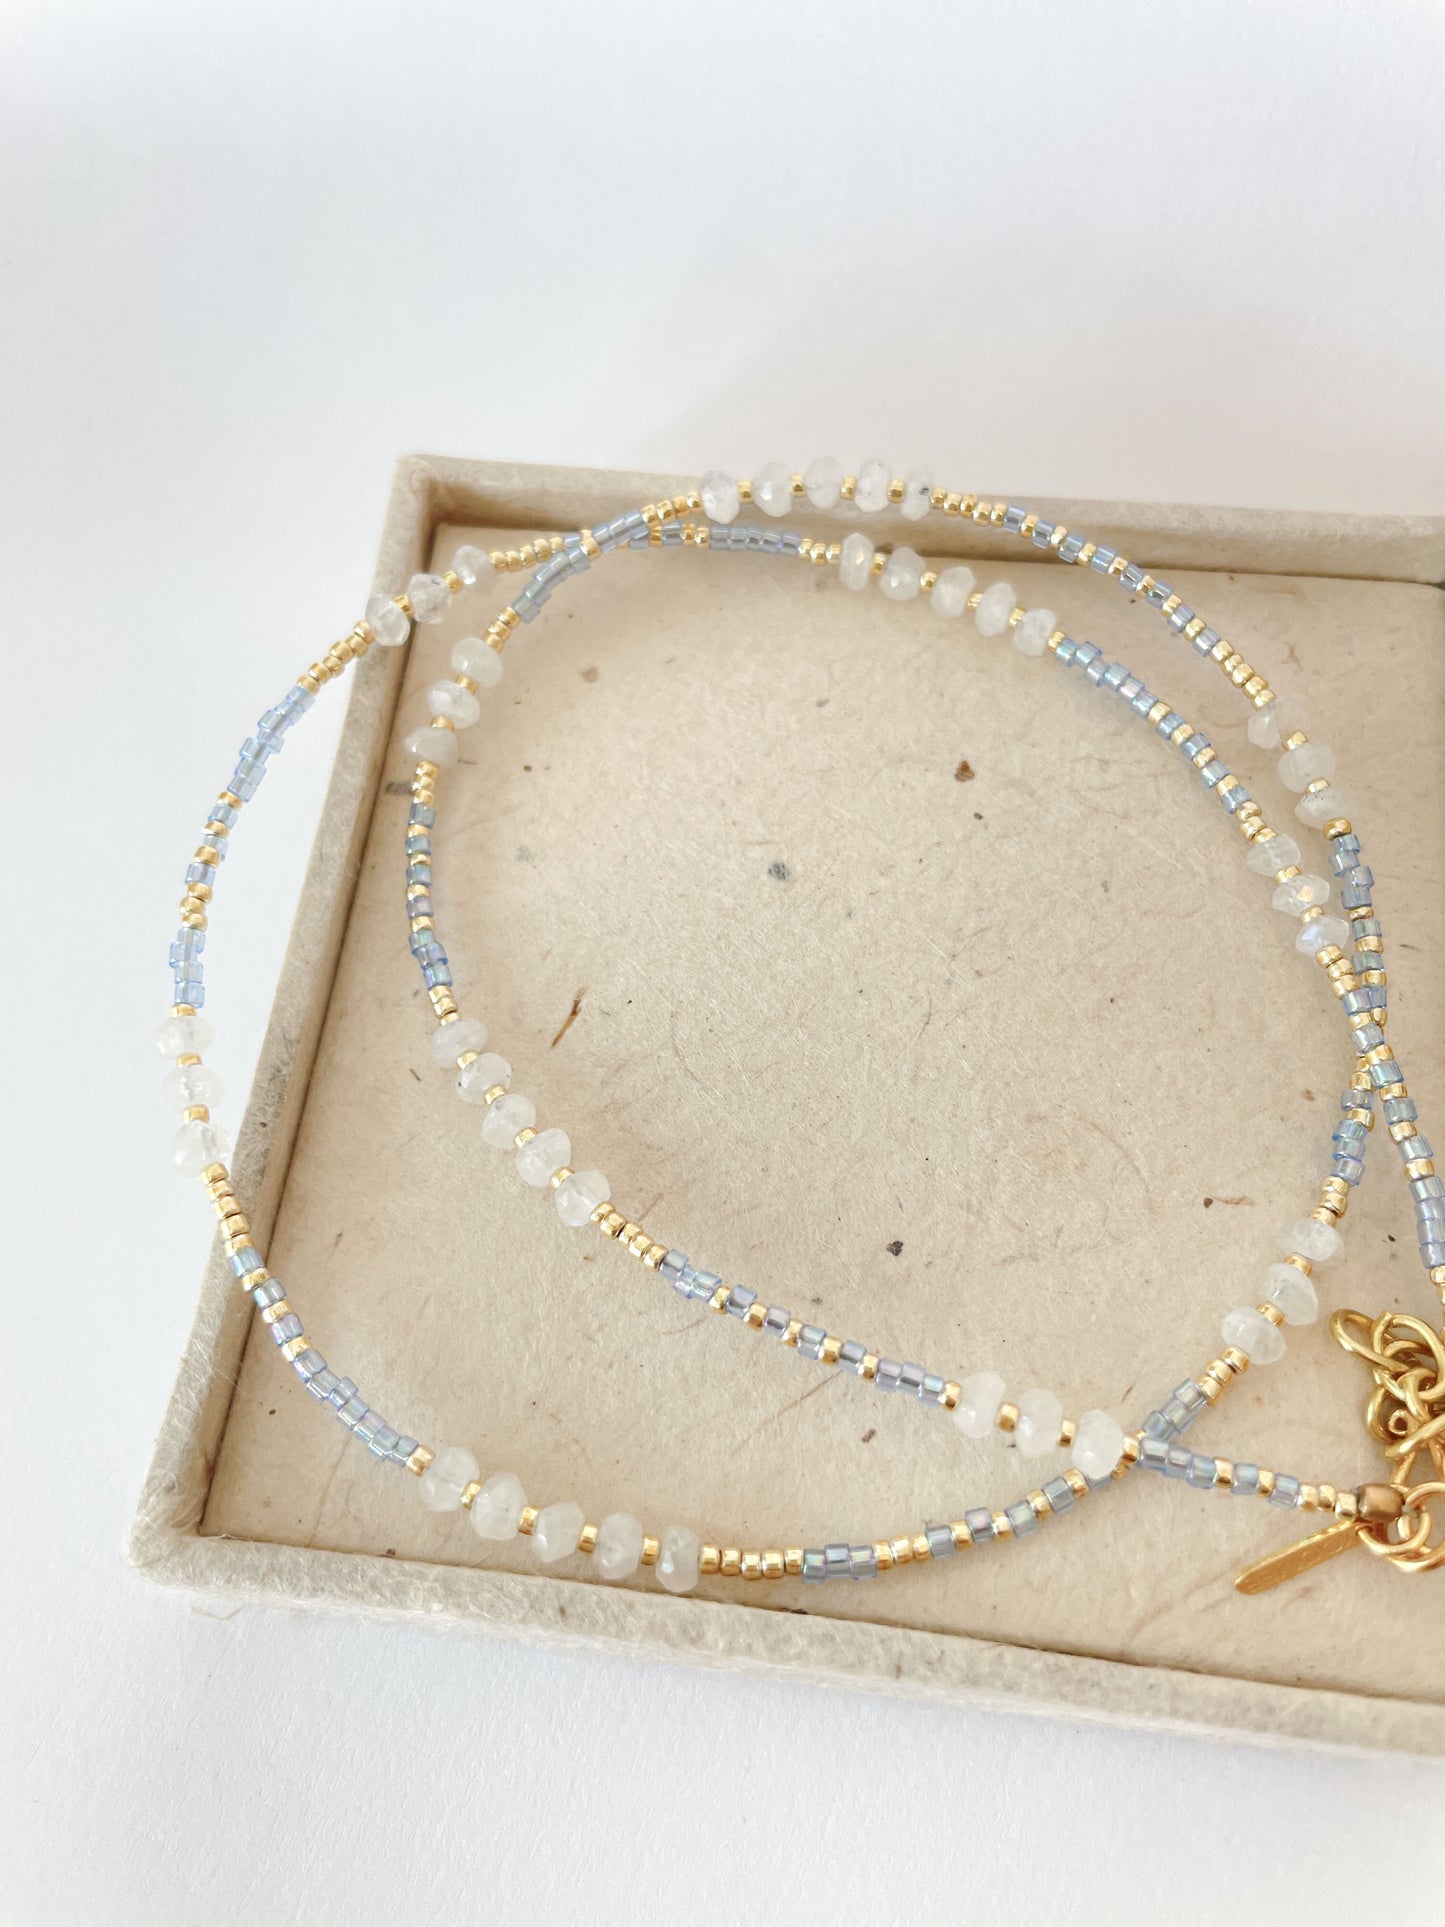 necklace - DINA moonstone - sky blue